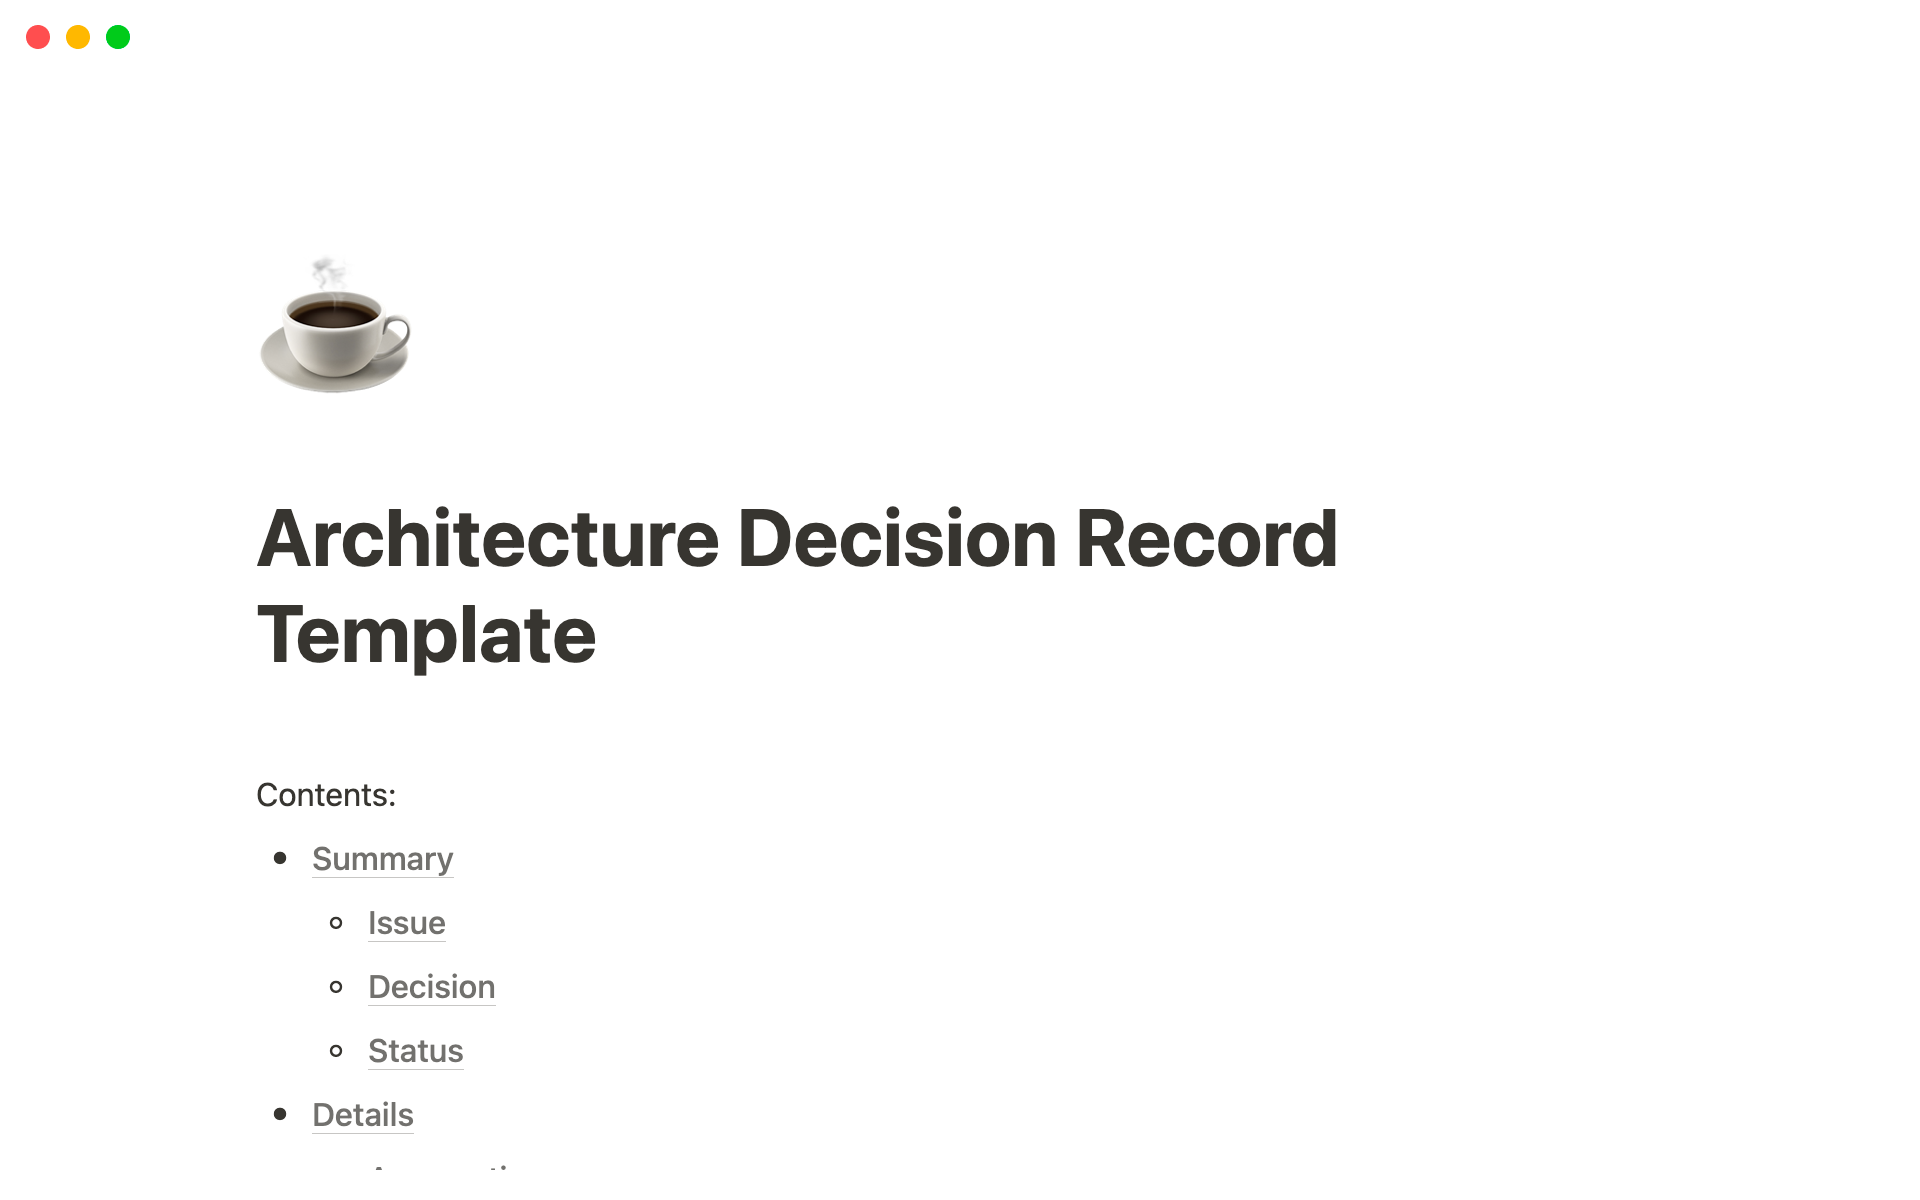 Uma prévia do modelo para Architecture Decision Record Template